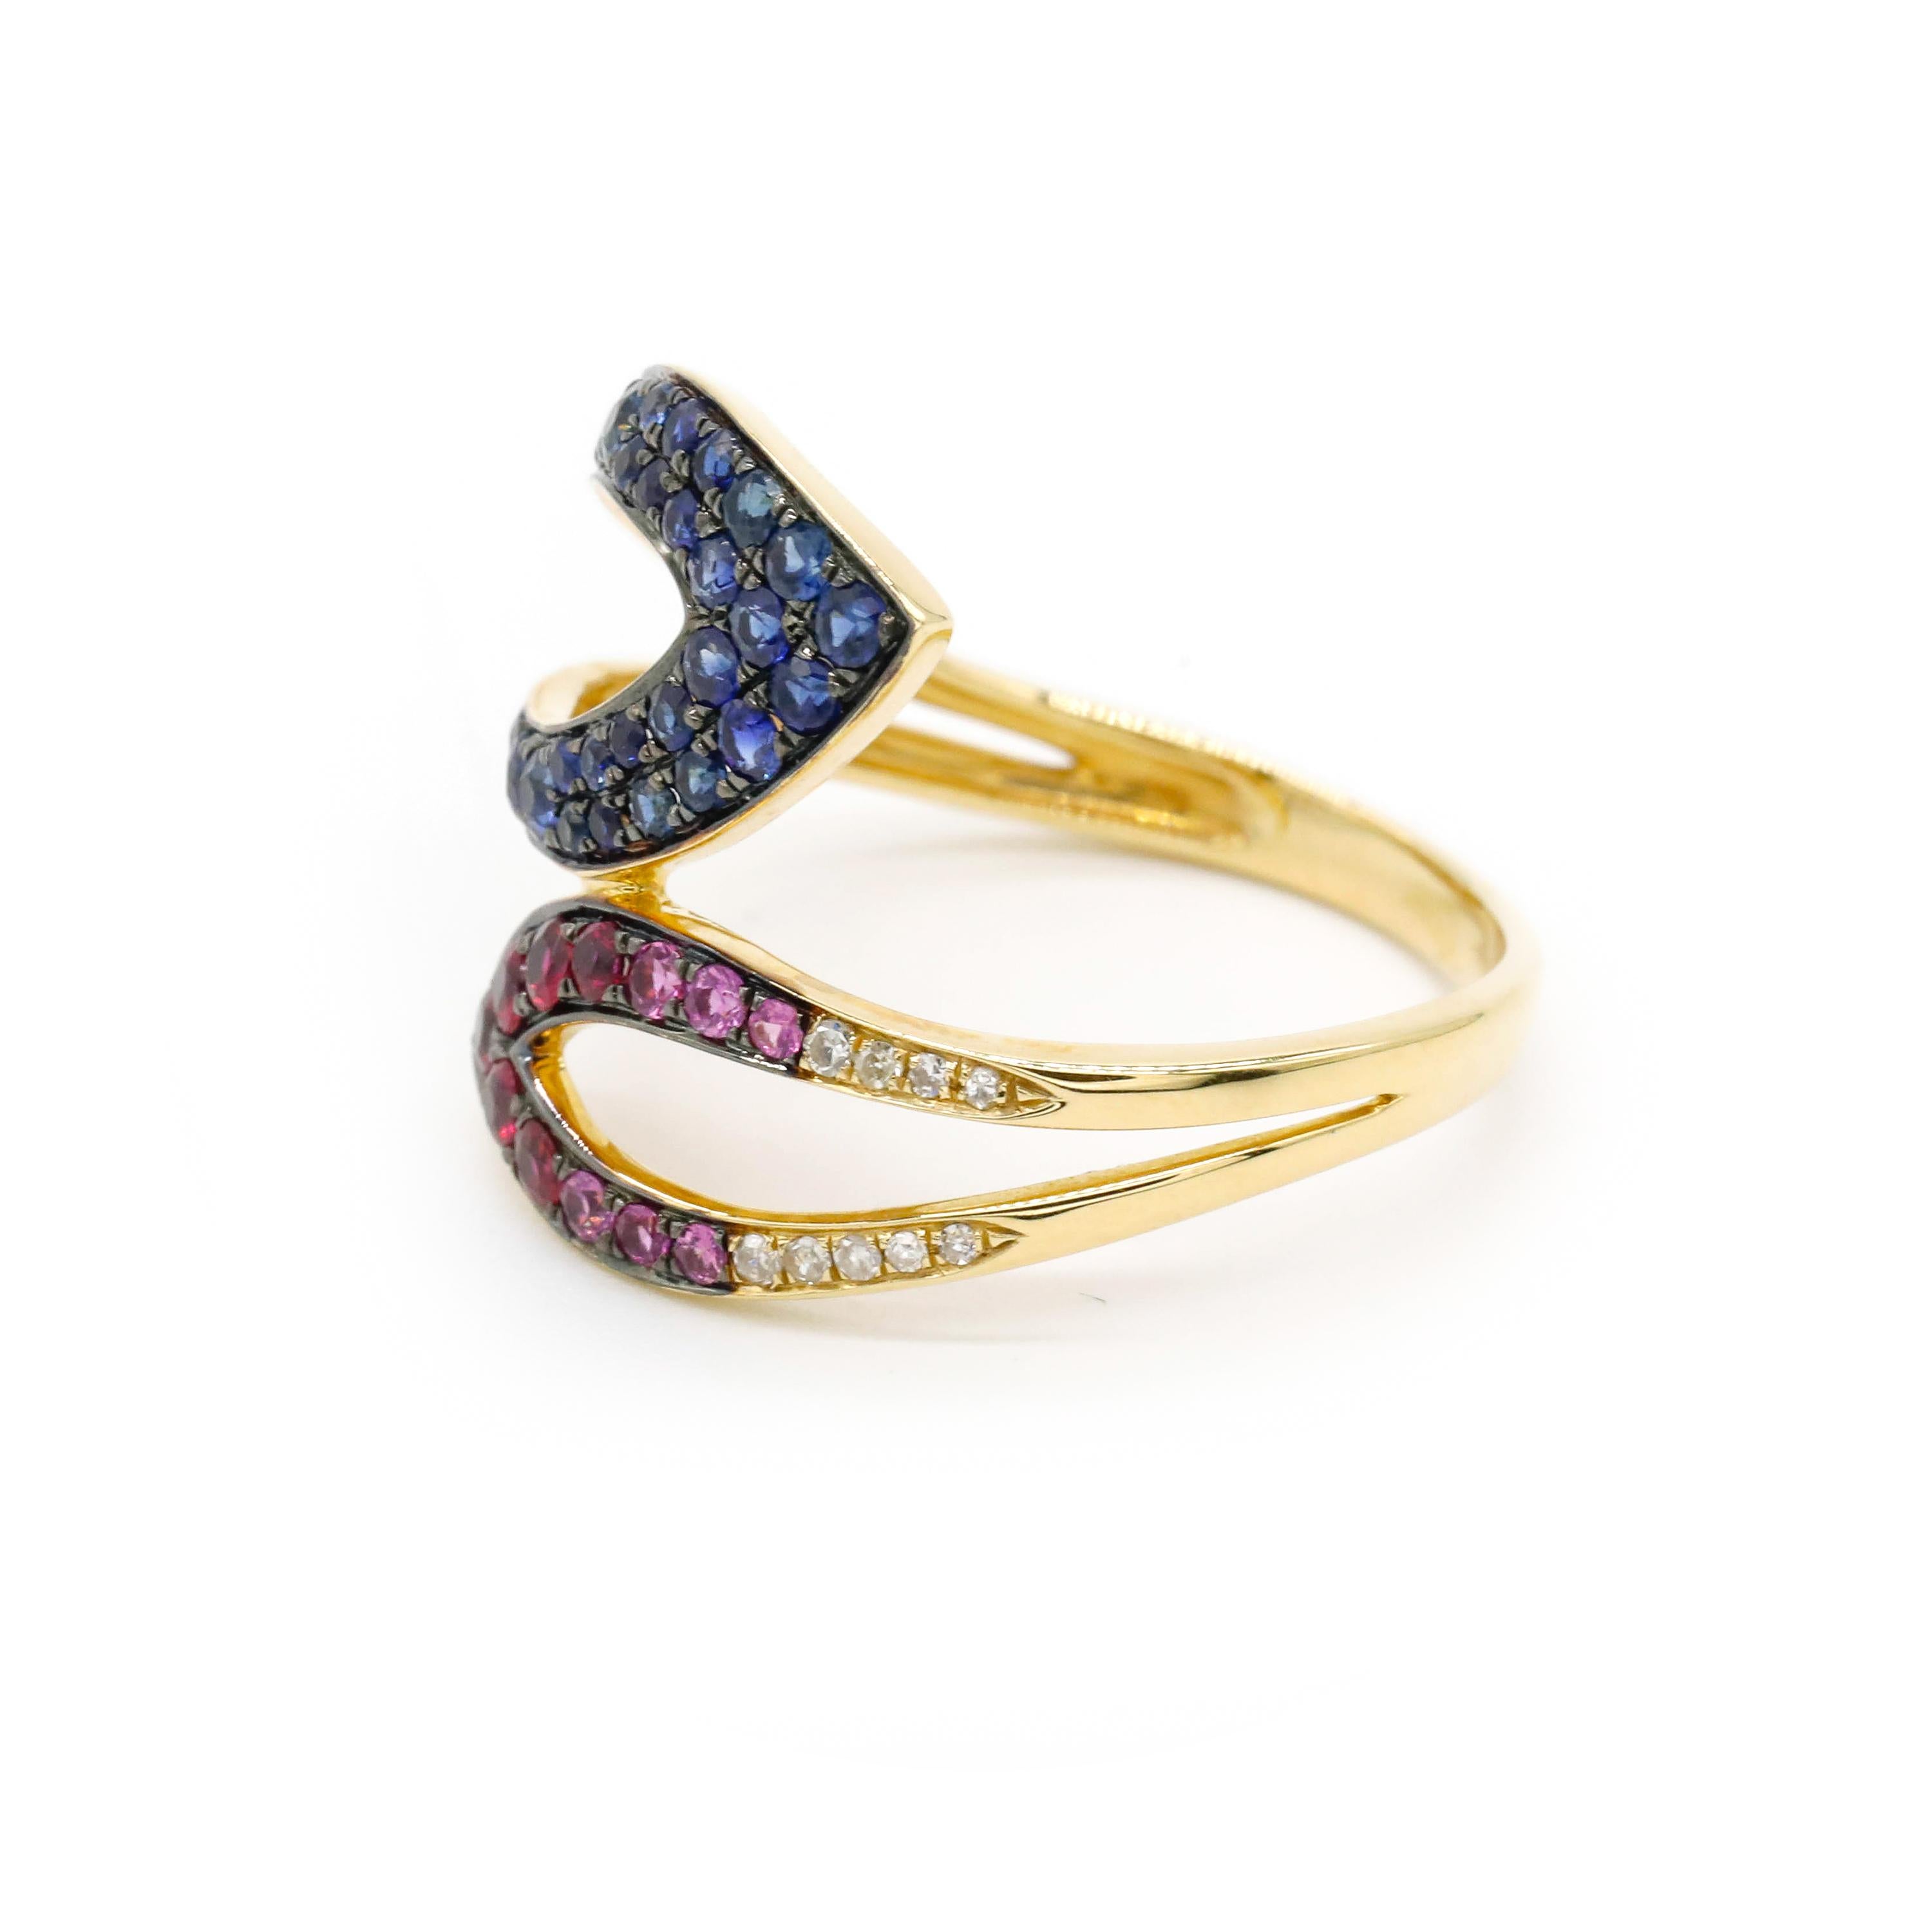 0,14 Karat Rundschliff Diamant 0,31 Karat Blauer Saphir 14k Gelbgold Wrap Ring

Ob als Ehering oder als Jubiläumsring - dieser Ring ist einfach perfekt. Mit einer einzelnen Reihe von 0,31 Karat natürlichen rosa und blauen Saphiren, gefasst in einer